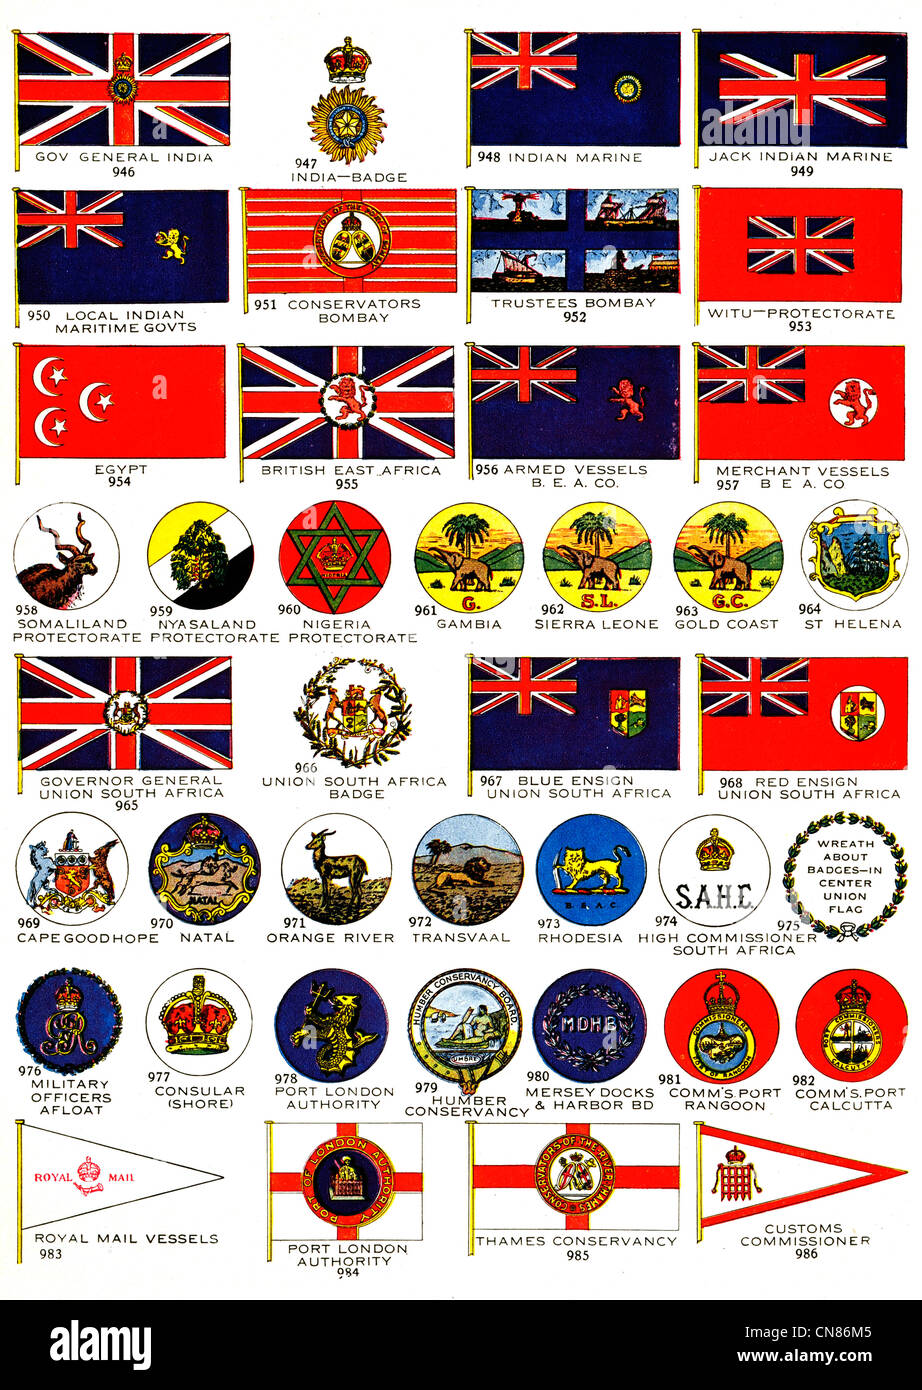 Publicado por primera vez en 1917 Banderas Bandera Insignia India conservadores marinos Egipto África Oriental Británica Witu buque armado Nigeria NiYASaland Foto de stock